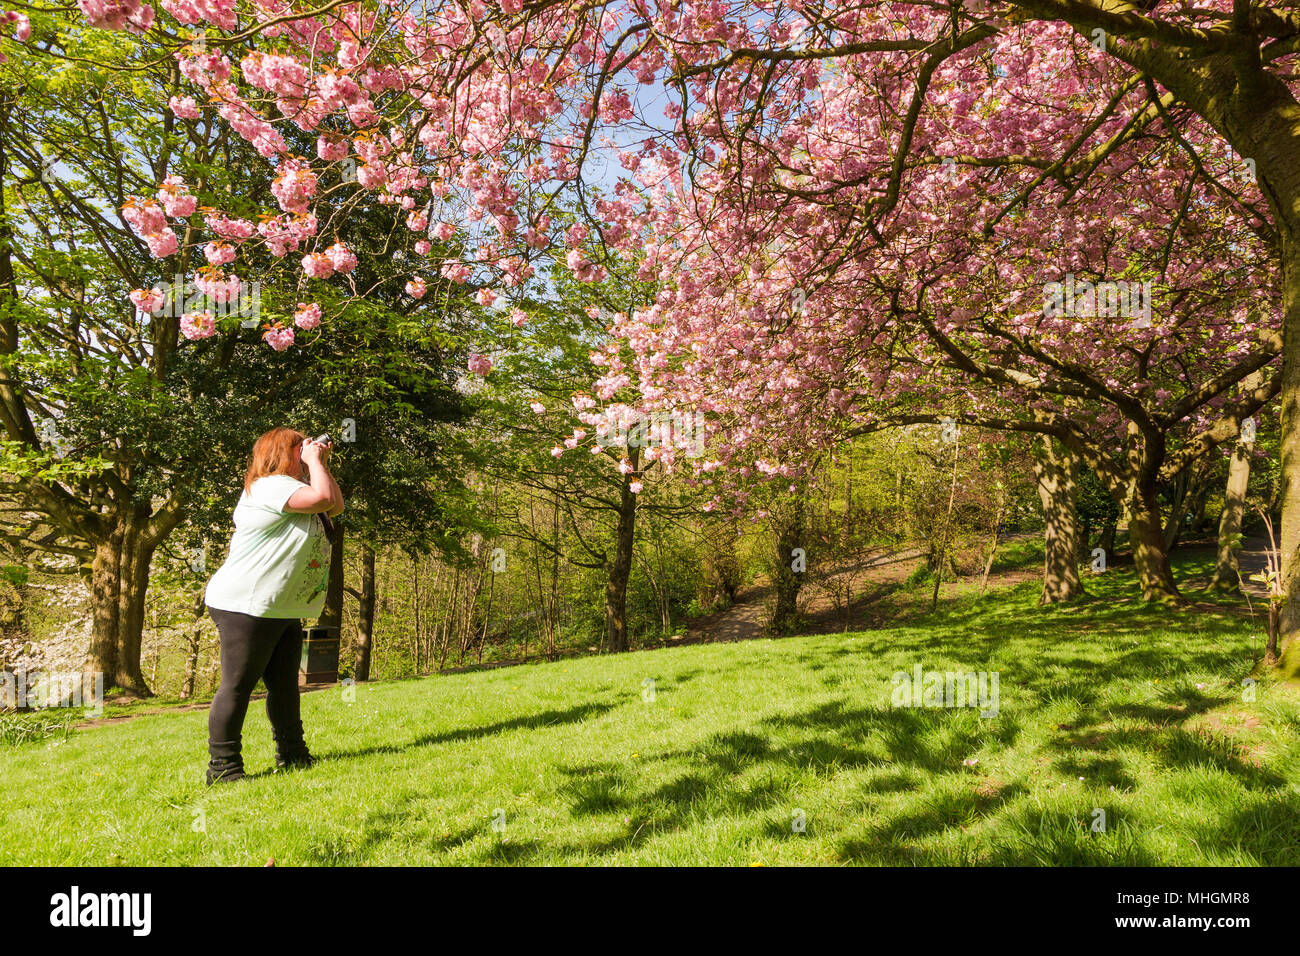 Frau Fotos von einer Blüte Baum Blumen in einem Park Großbritannien Stockfoto